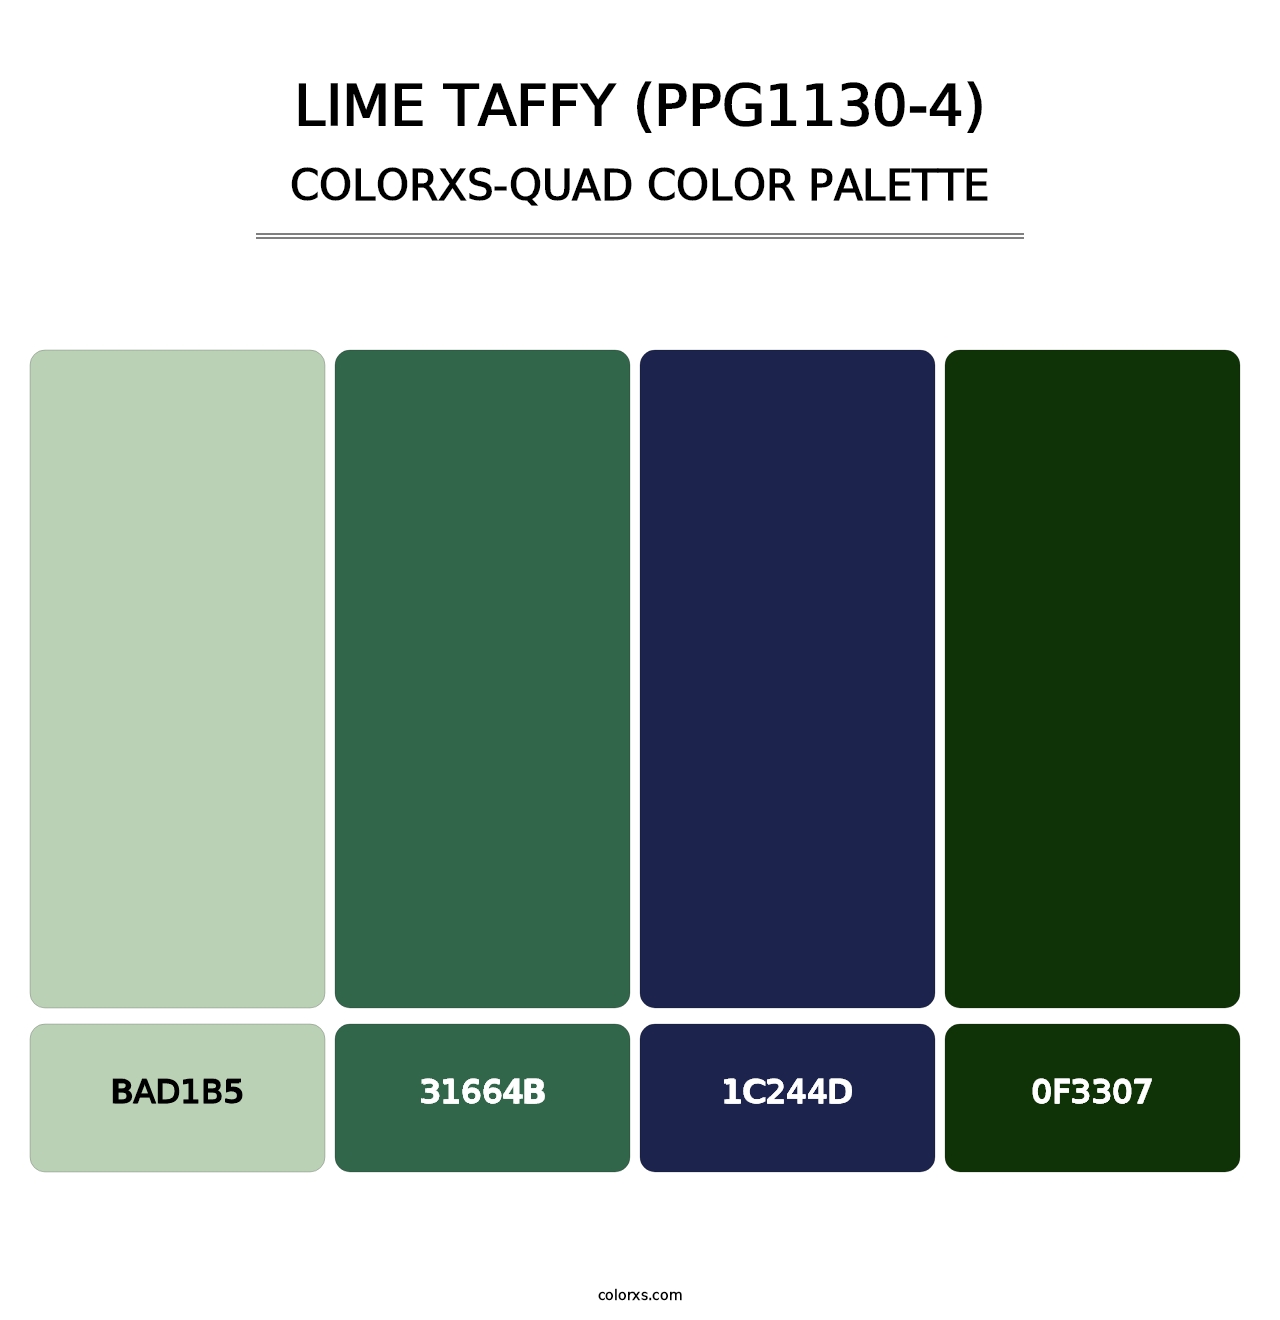 Lime Taffy (PPG1130-4) - Colorxs Quad Palette